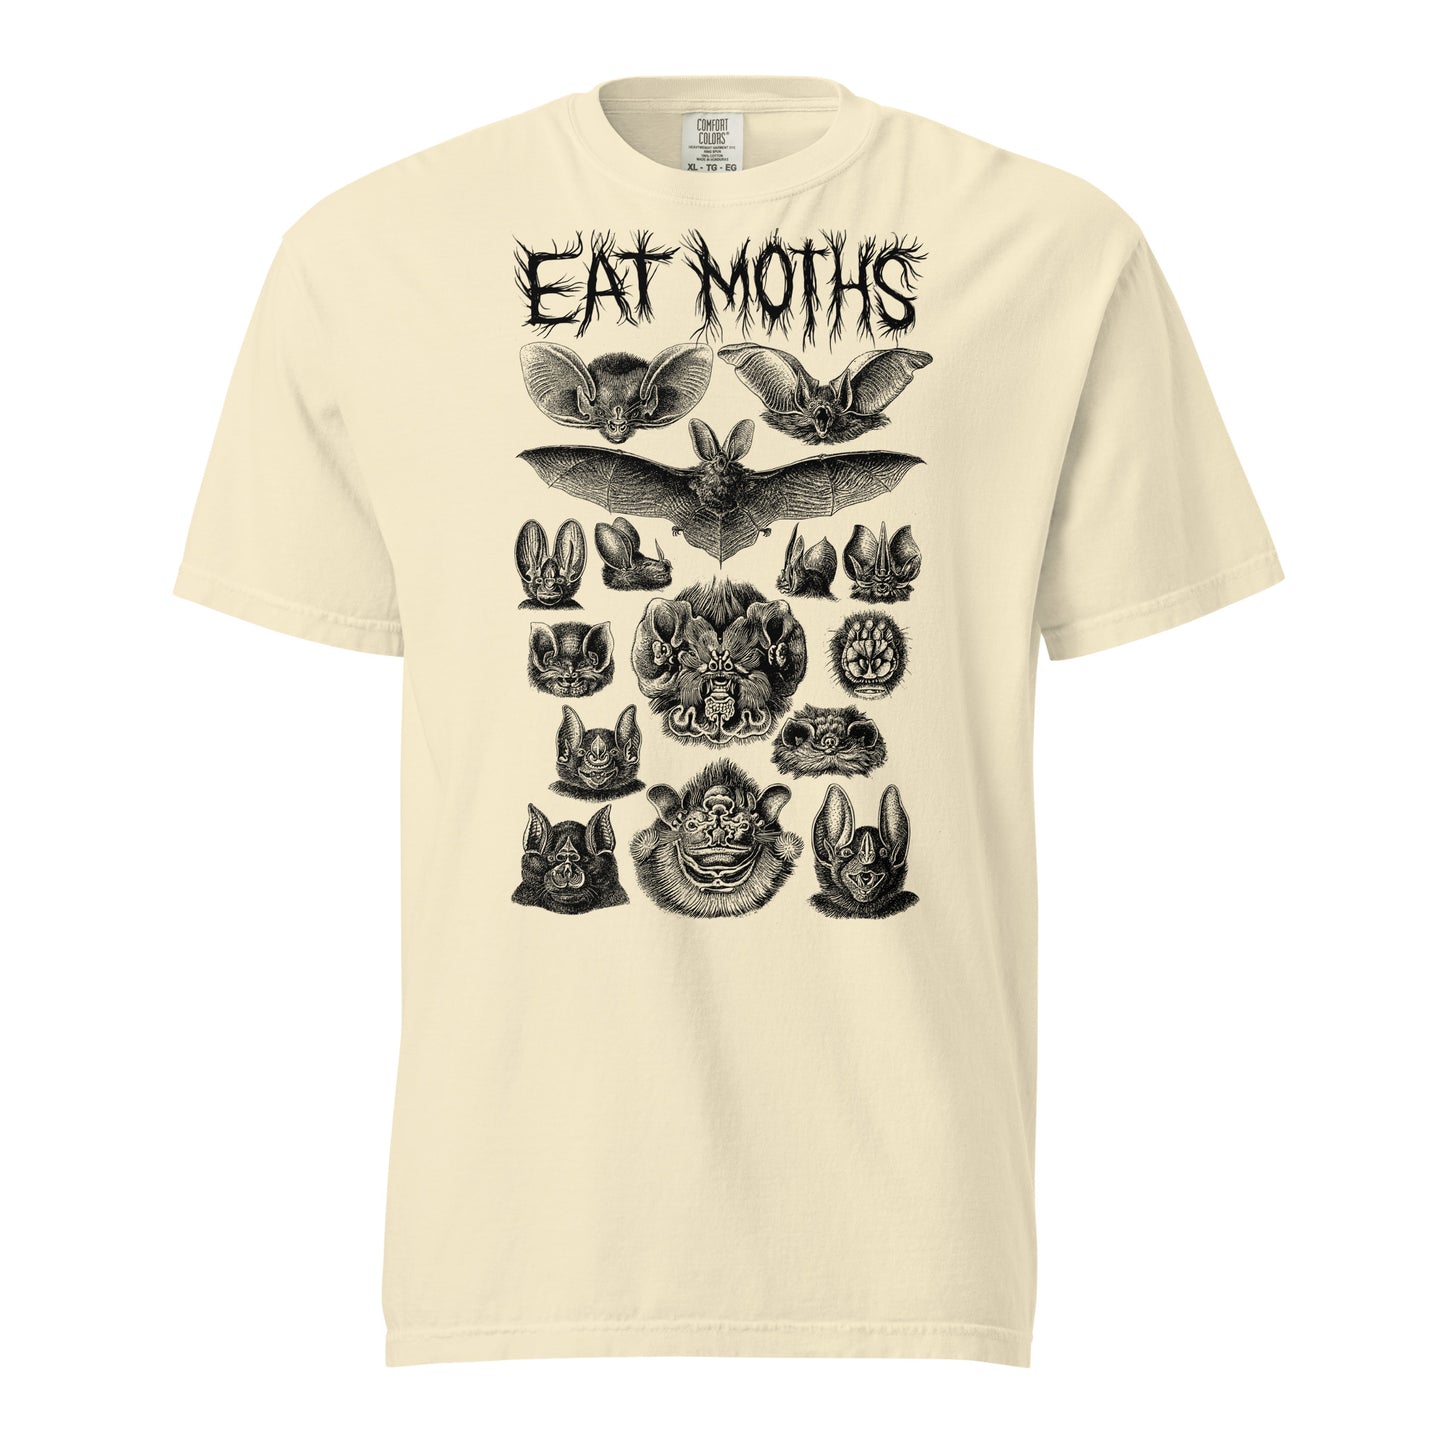 "Eat Moths" Unisex garment-dyed heavyweight t-shirt